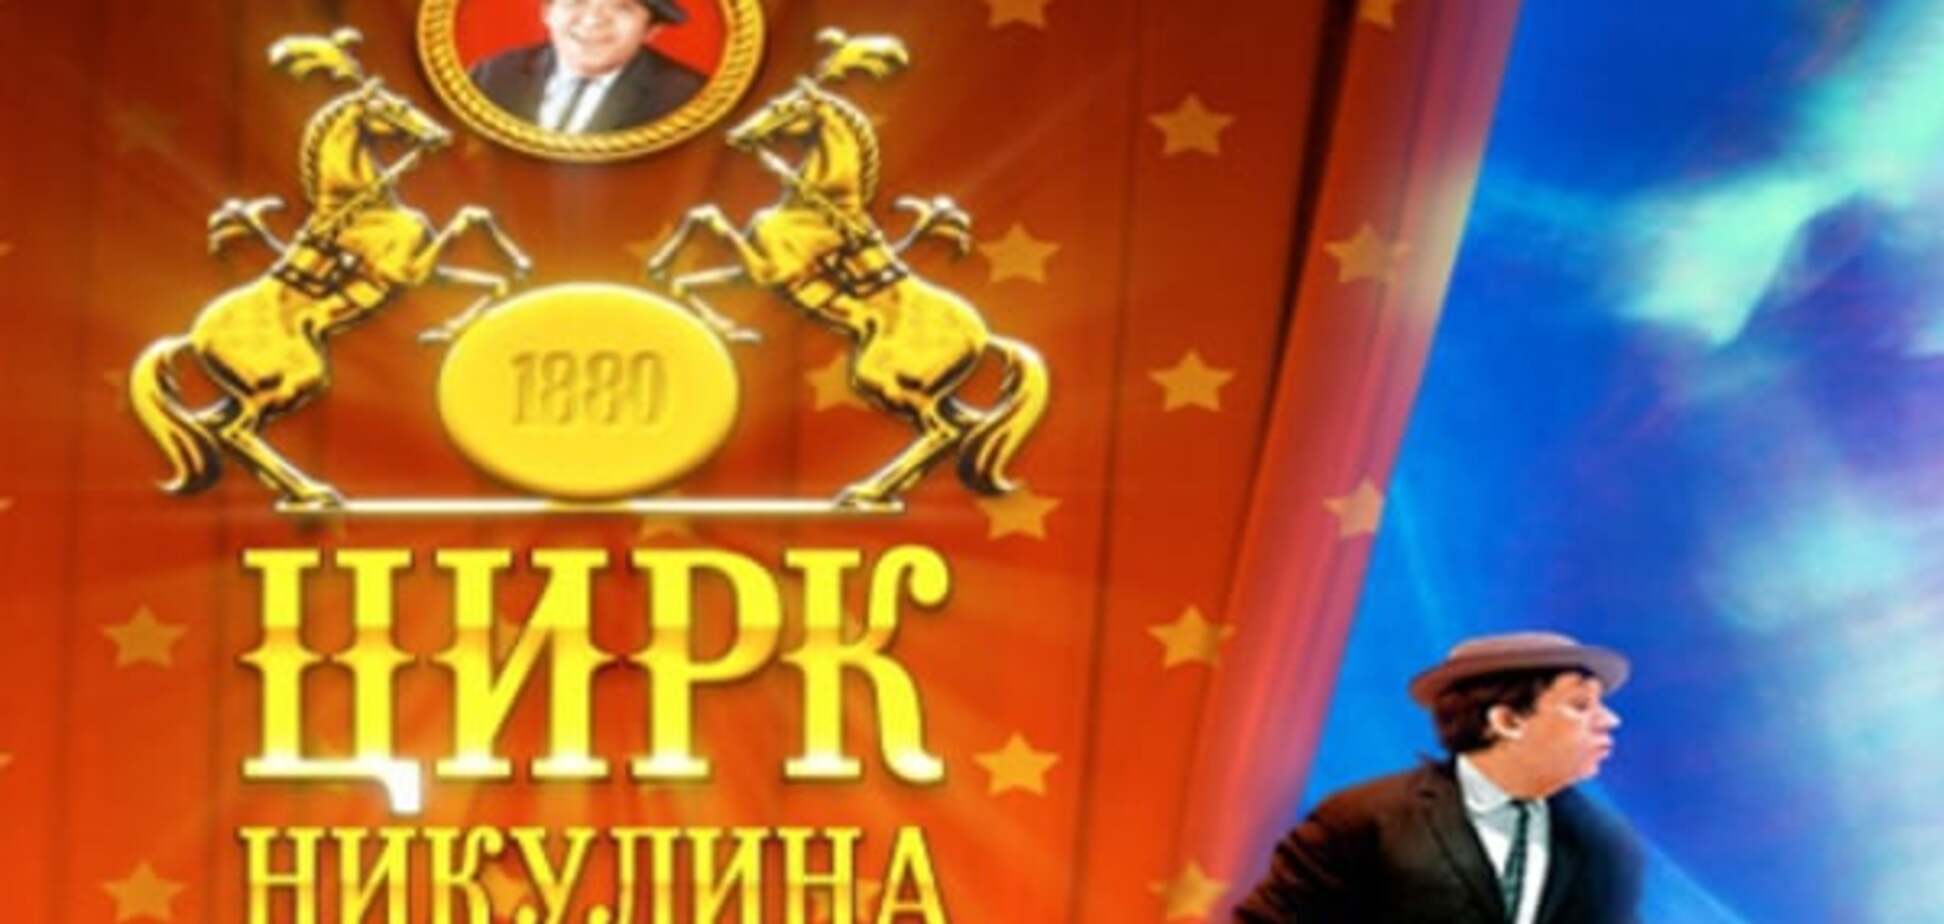 Своего цирка хватит: московские клоуны не захотели приехать в Донецк по приглашению террористов 